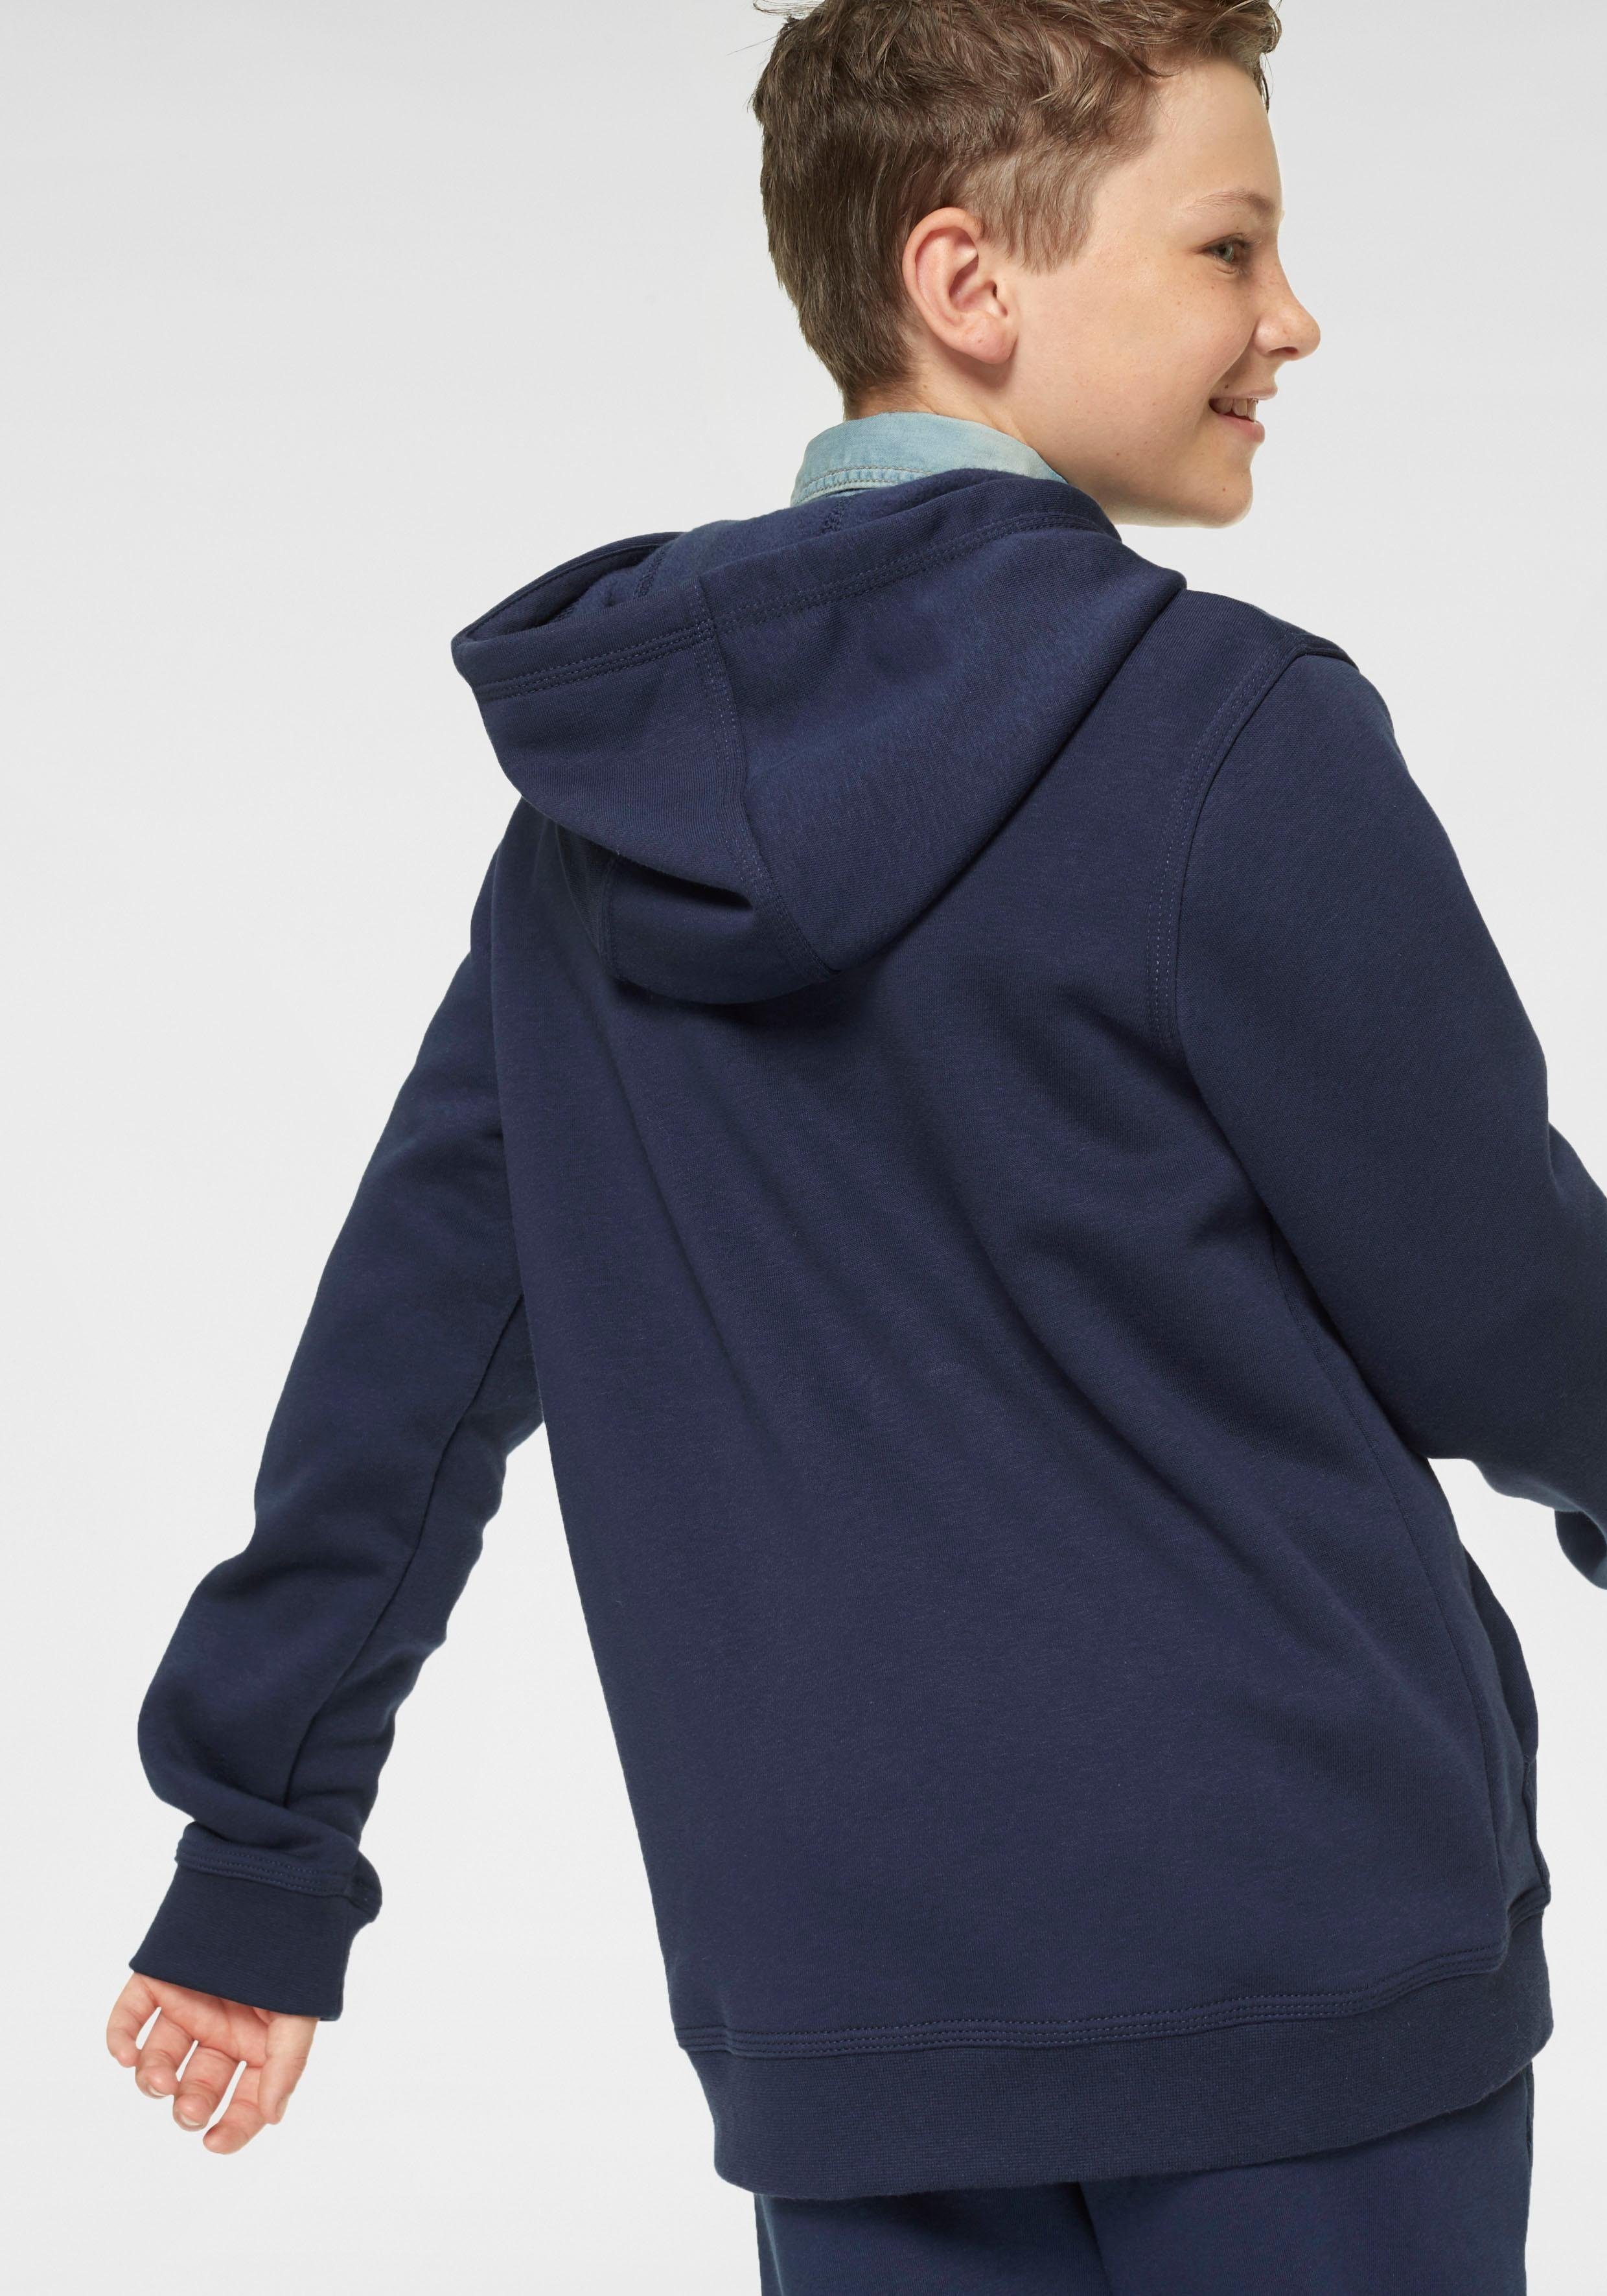 FZ Nike NSW dunkelblau HOODIE Kinder Sportswear - für Kapuzensweatjacke CLUB